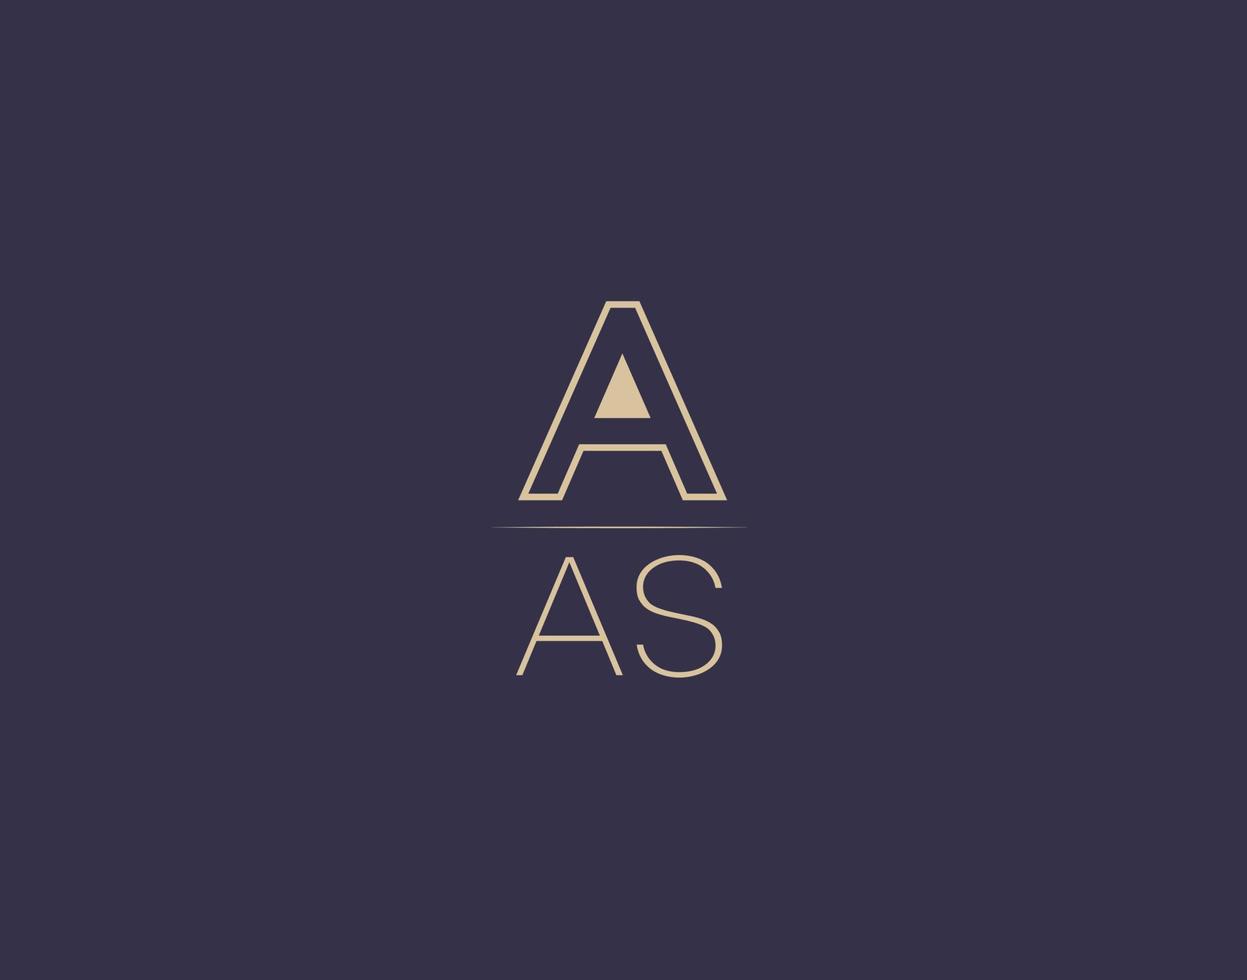 aas brief logo design moderne minimalistische vektorbilder vektor